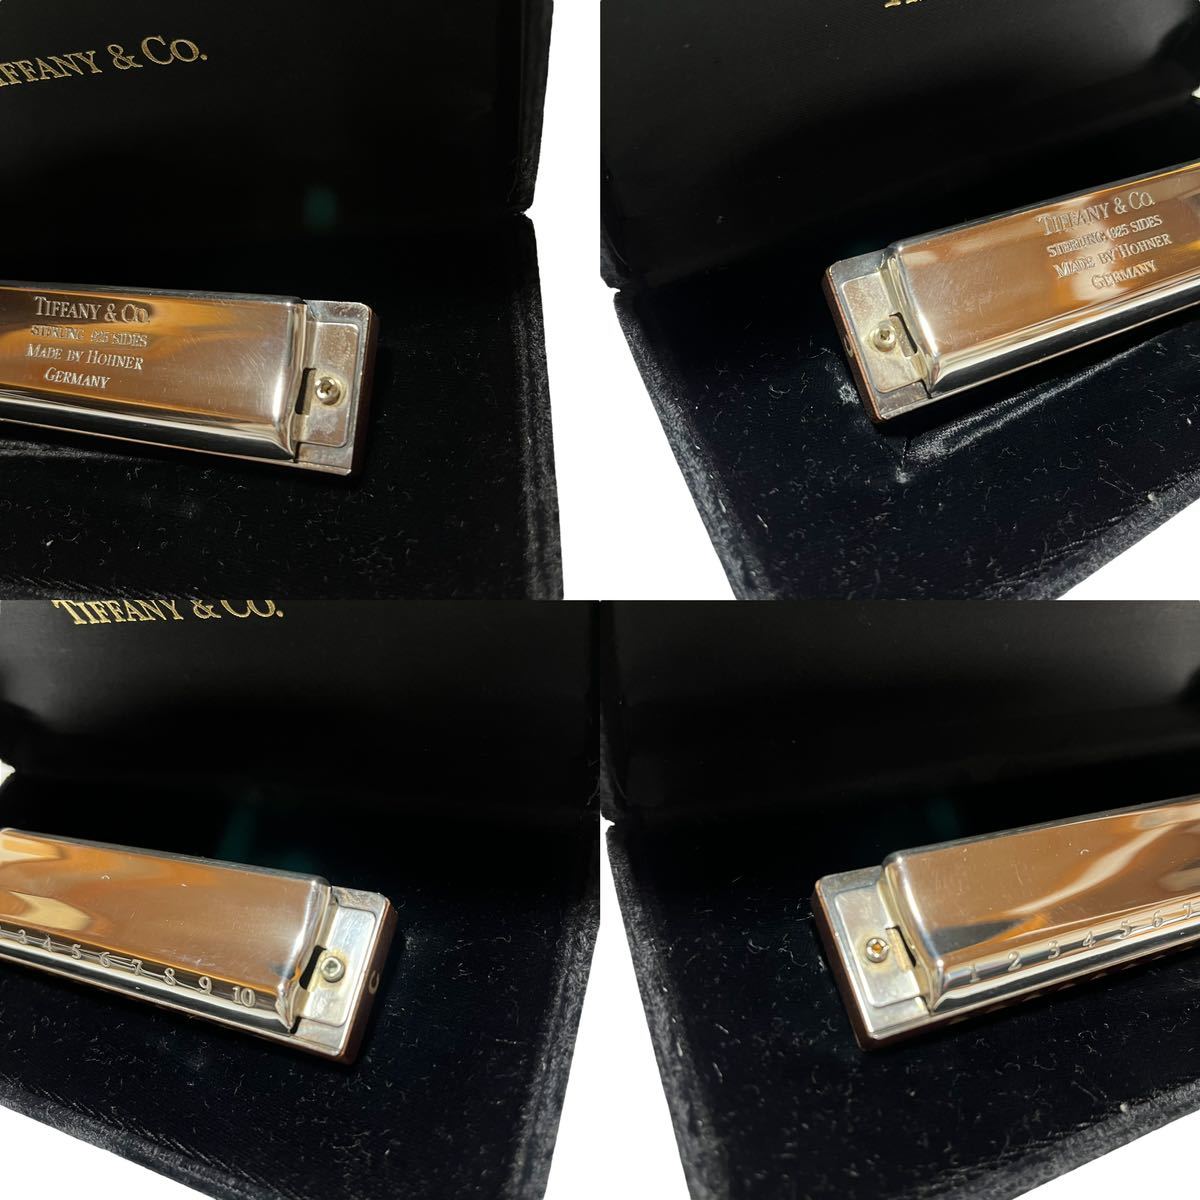 Tiffany&Co губная гармоника Sterling silver 925 редкий товар сигнал na-HOHNER музыкальные инструменты Tiffany 